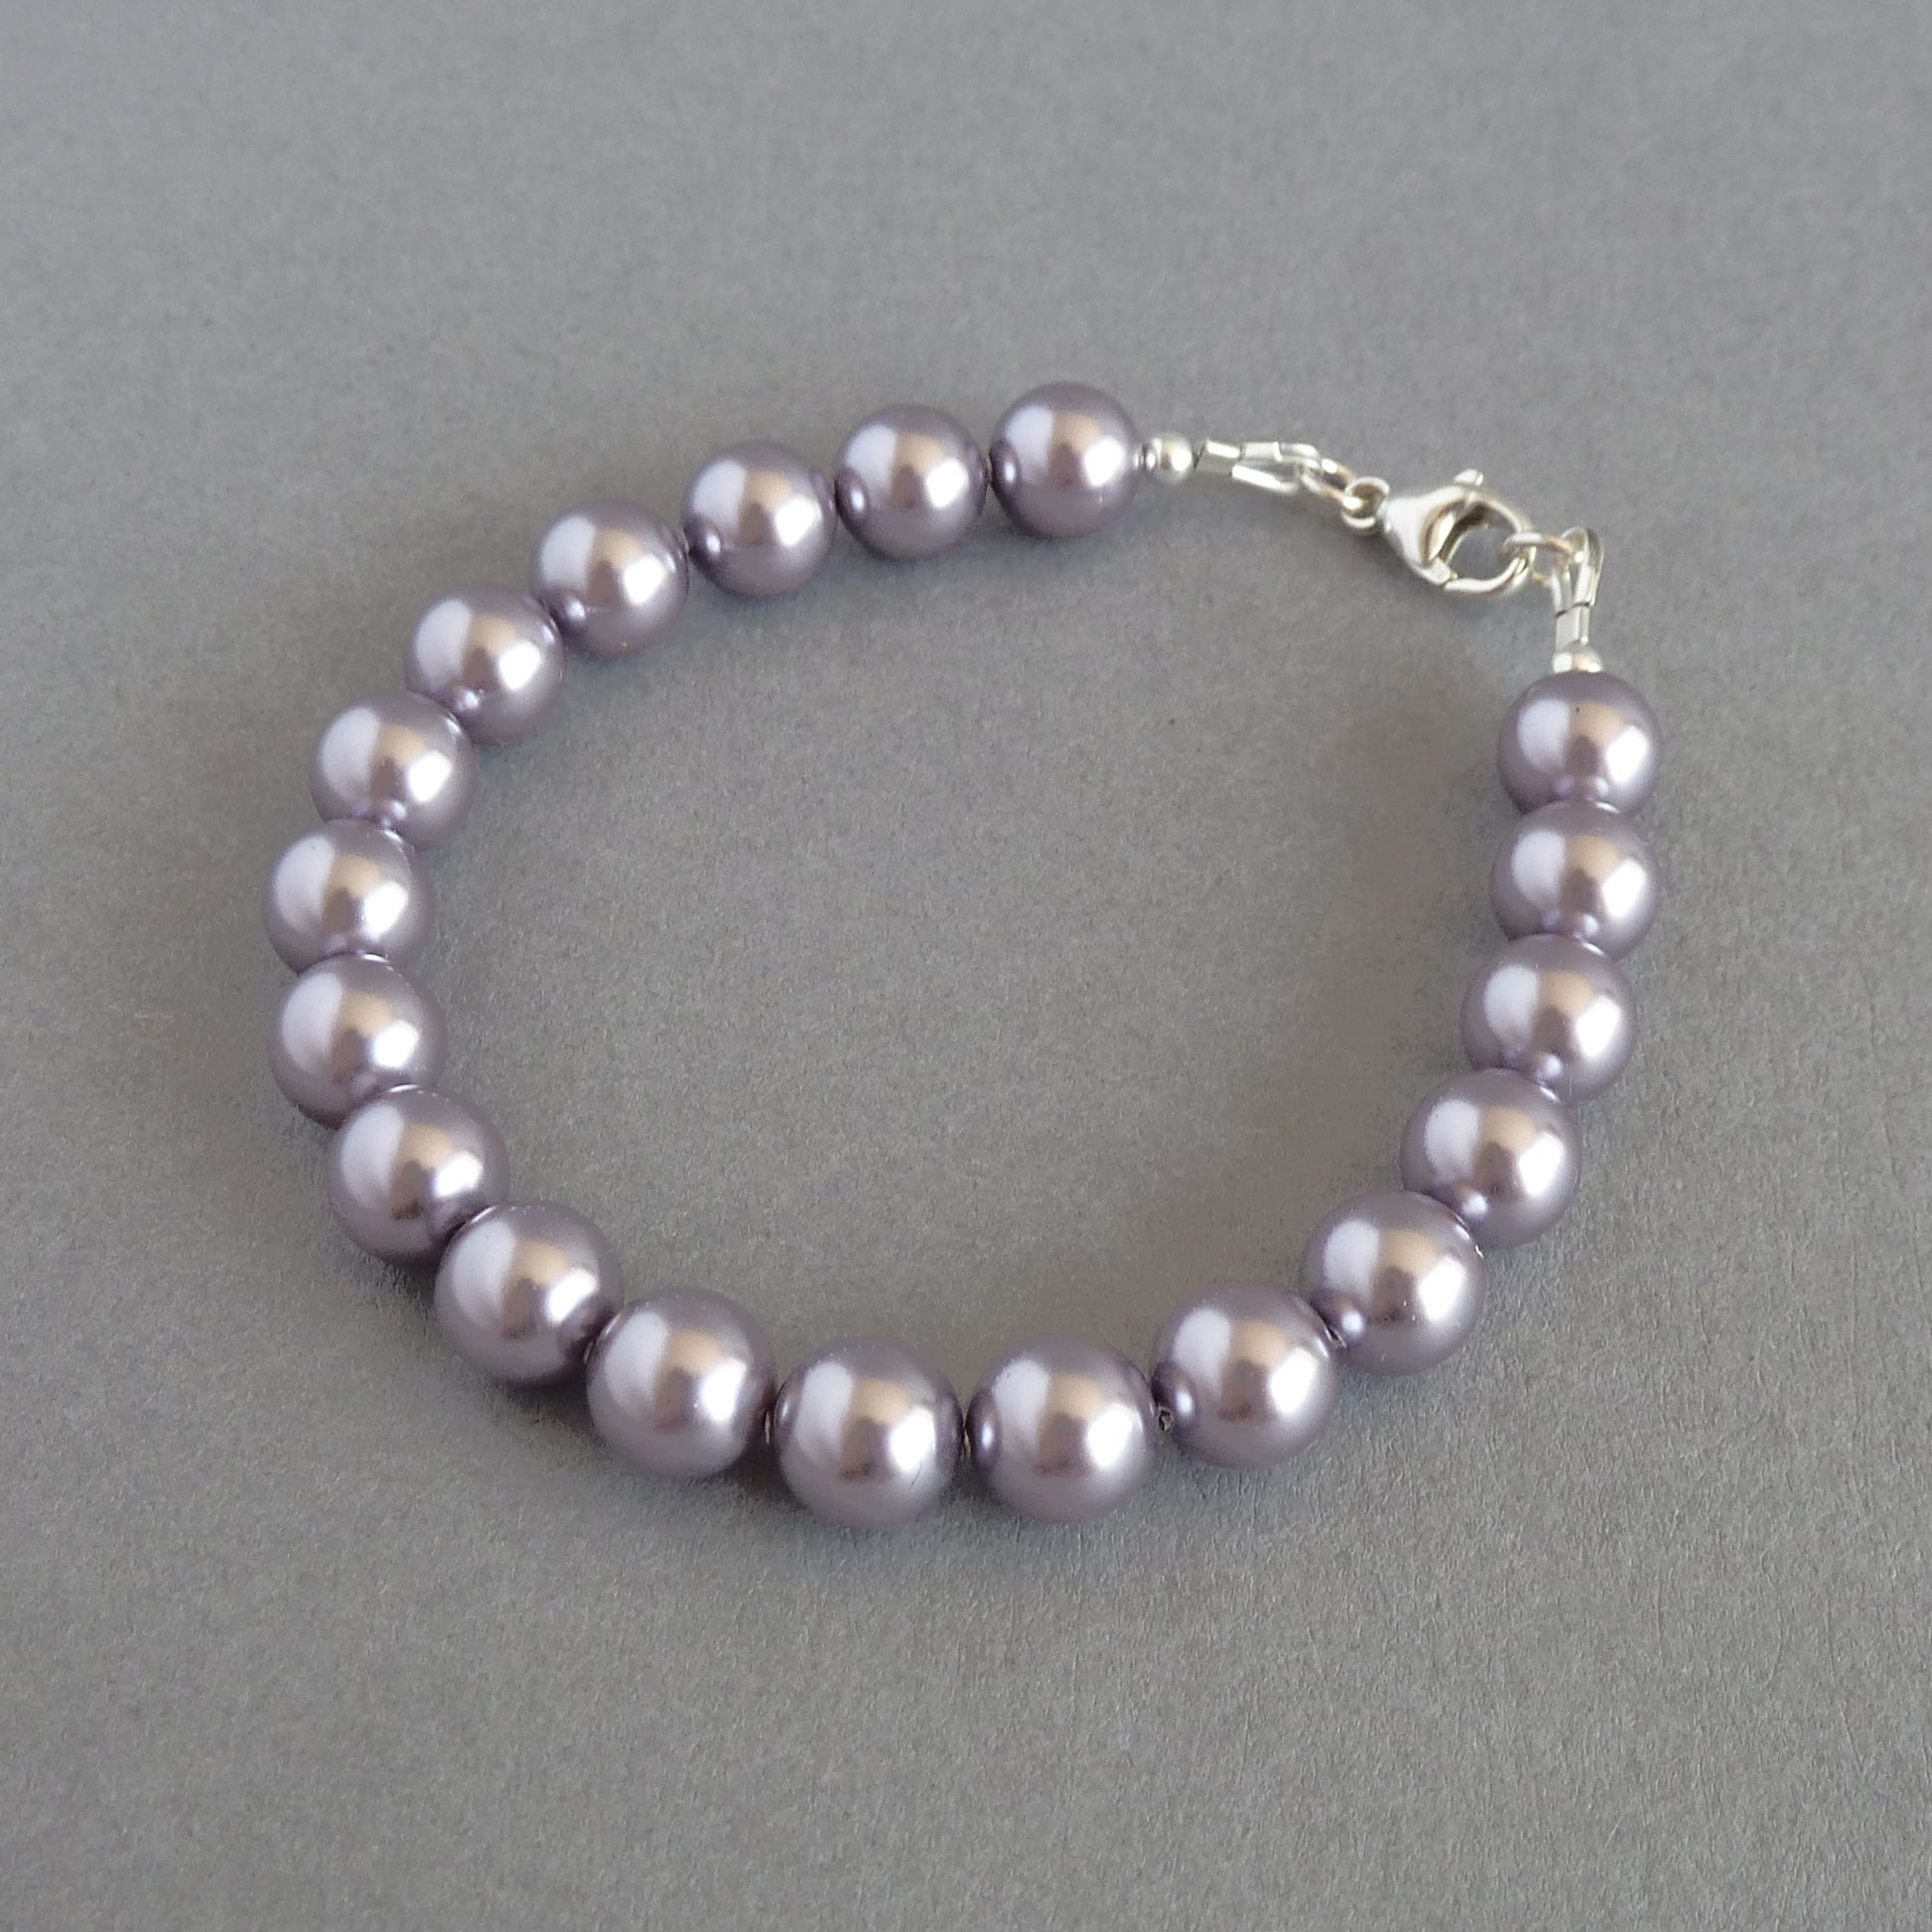 Single strand lavender pearl bracelet